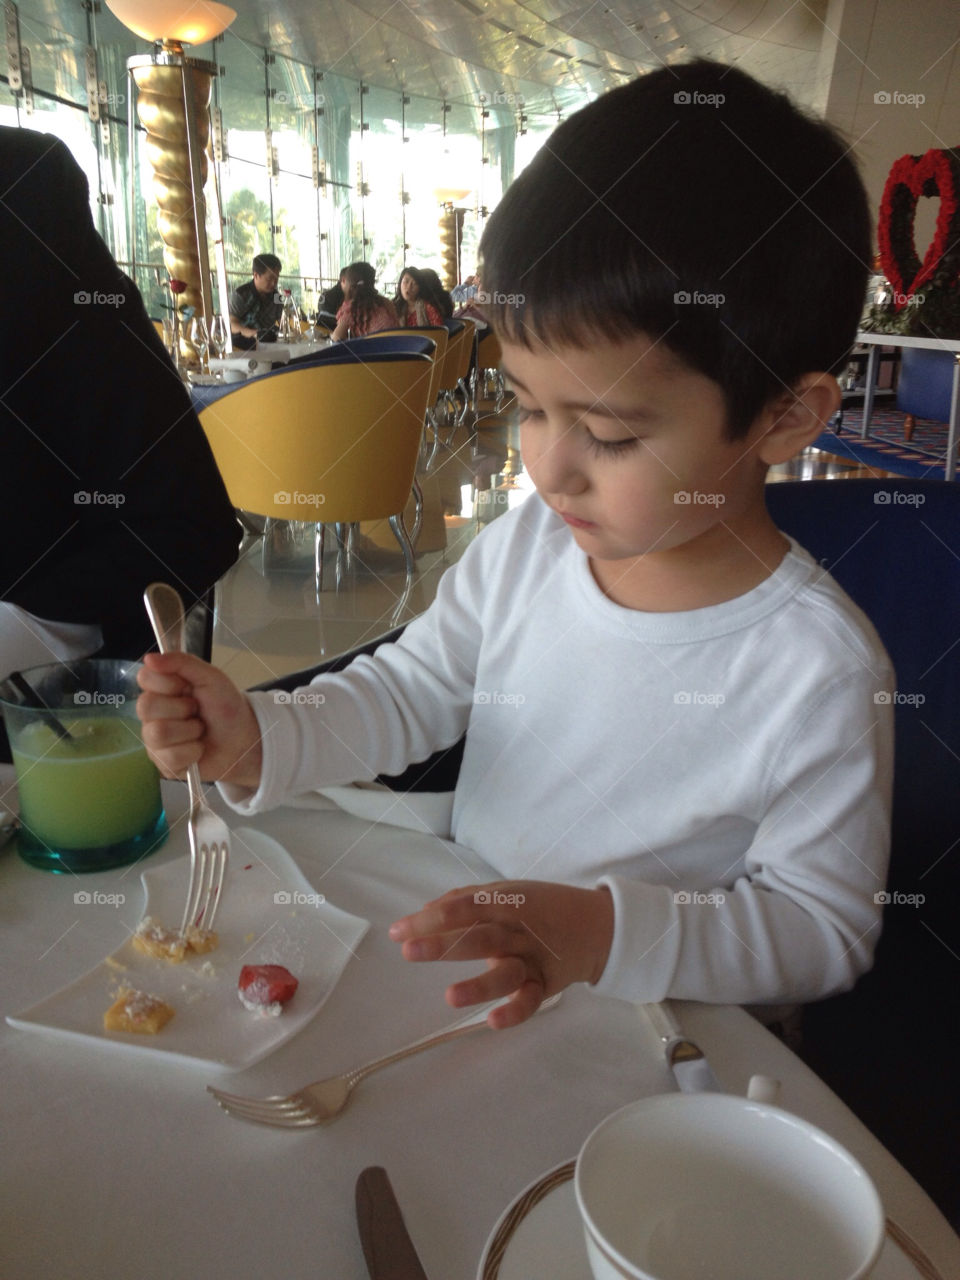 Young diner at Burj al Arab Dubai